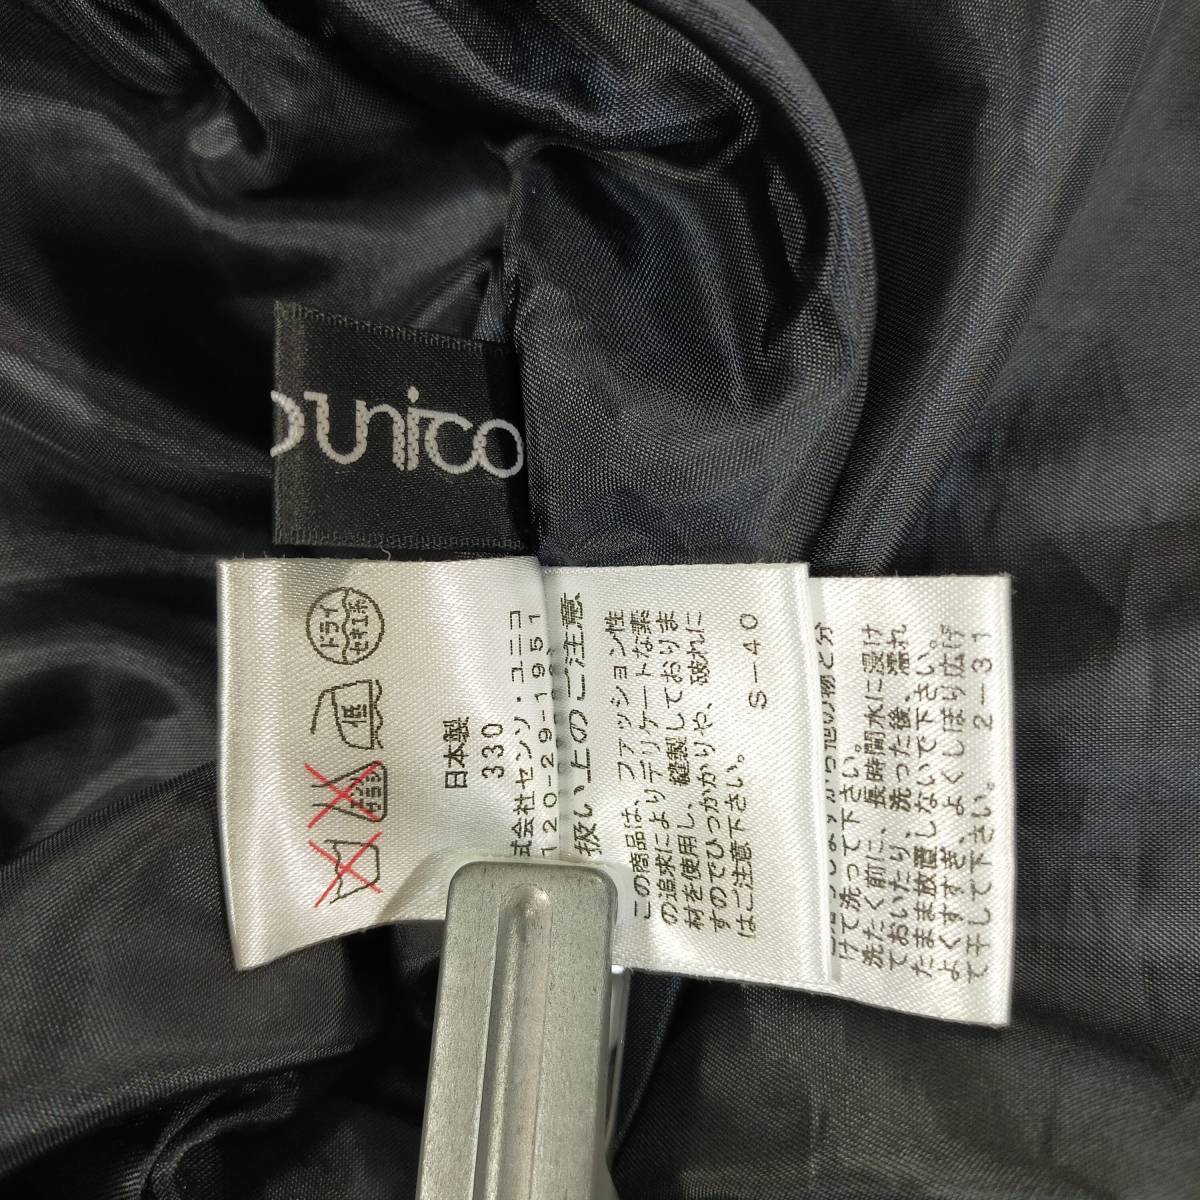 センソユニコ SENSOUNiCO スカート サイズ40 L ブラック 黒 シルク混